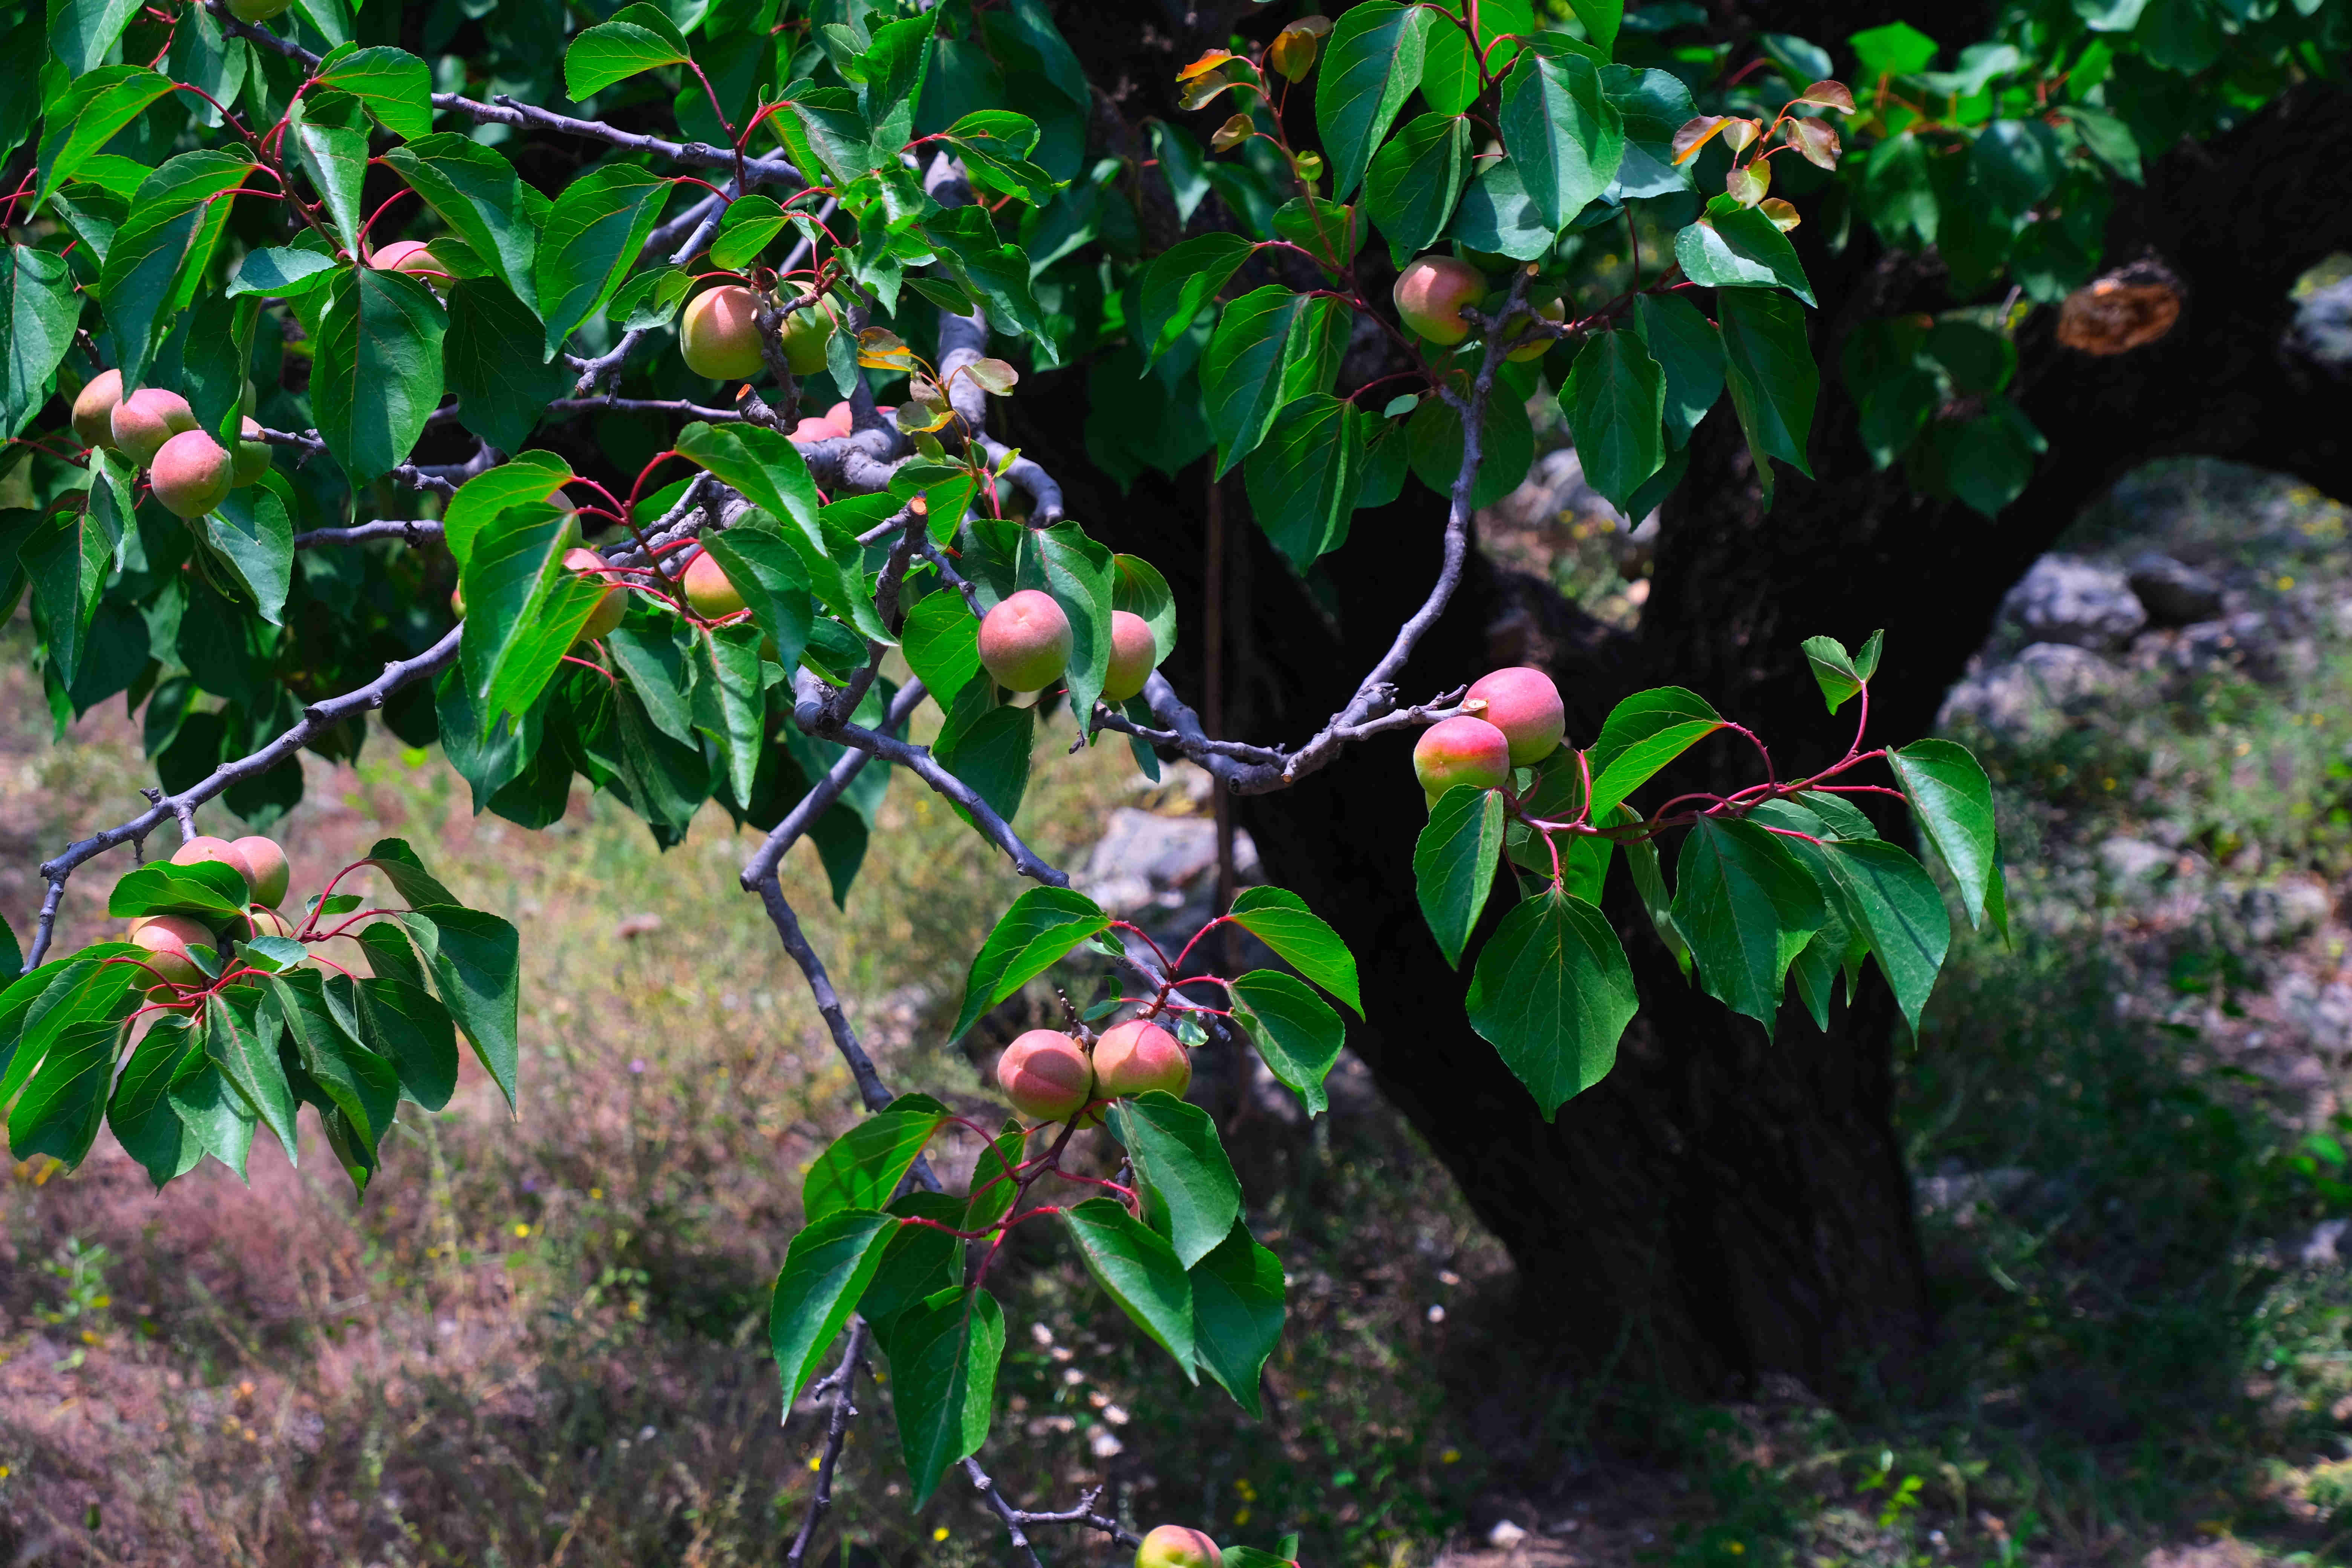 杏树尤其引人注目,虽然历经岁月沧桑,这棵老树依旧枝繁叶茂,果实丰硕